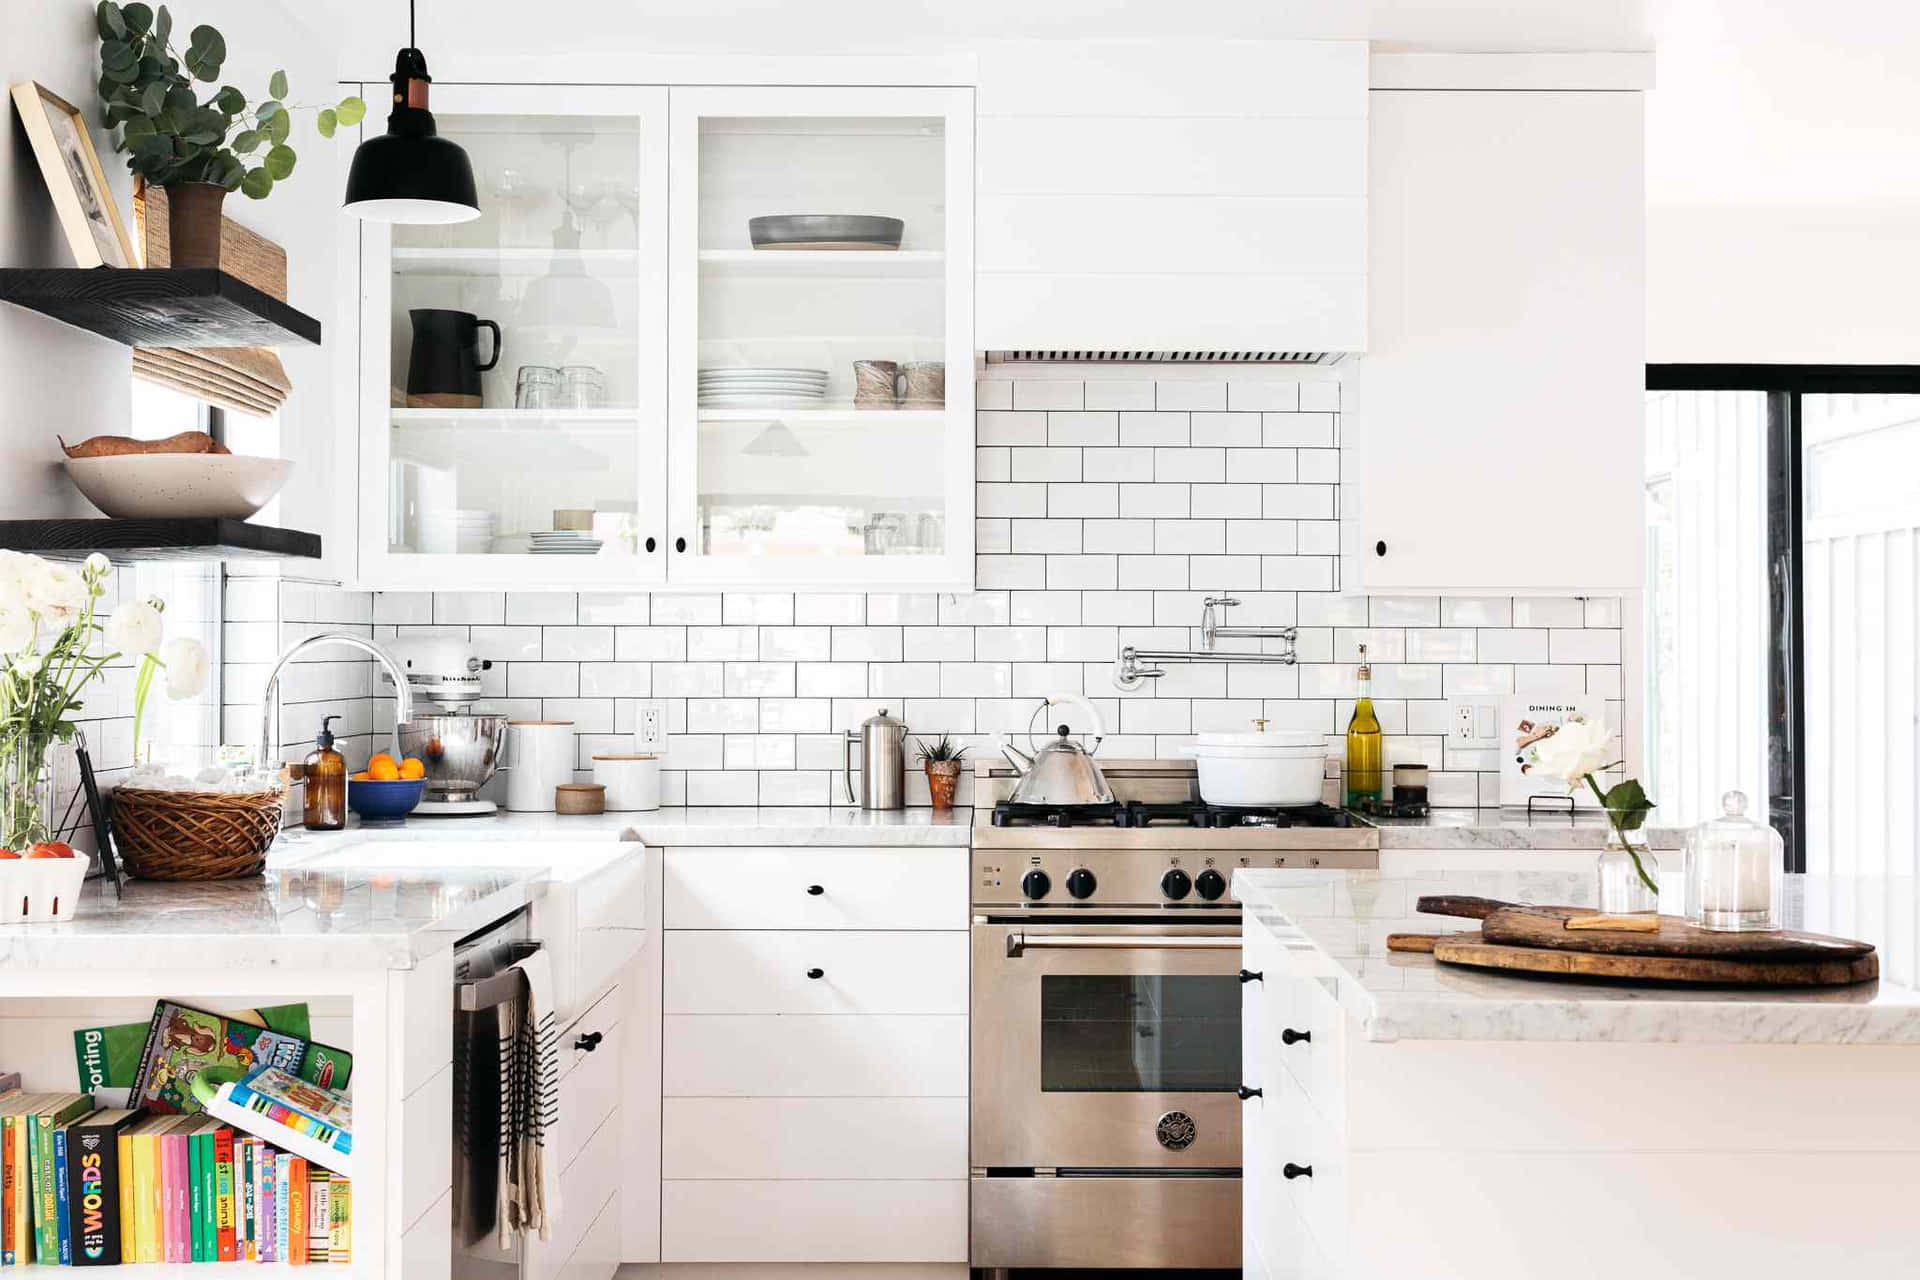 Imagemde Uma Cozinha Moderna Em Branco